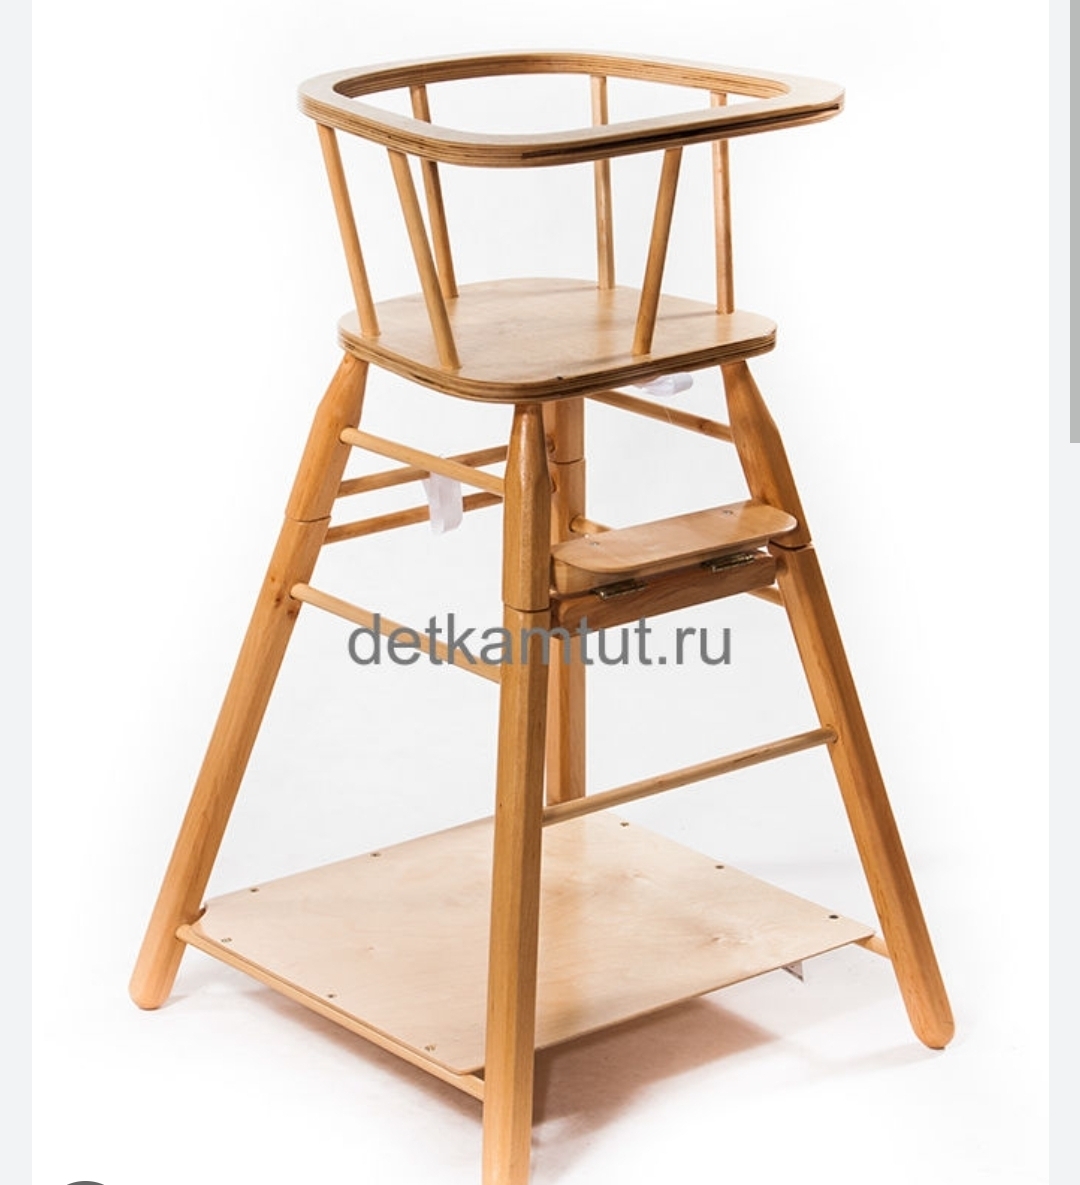 Советский детский стульчик деревянный